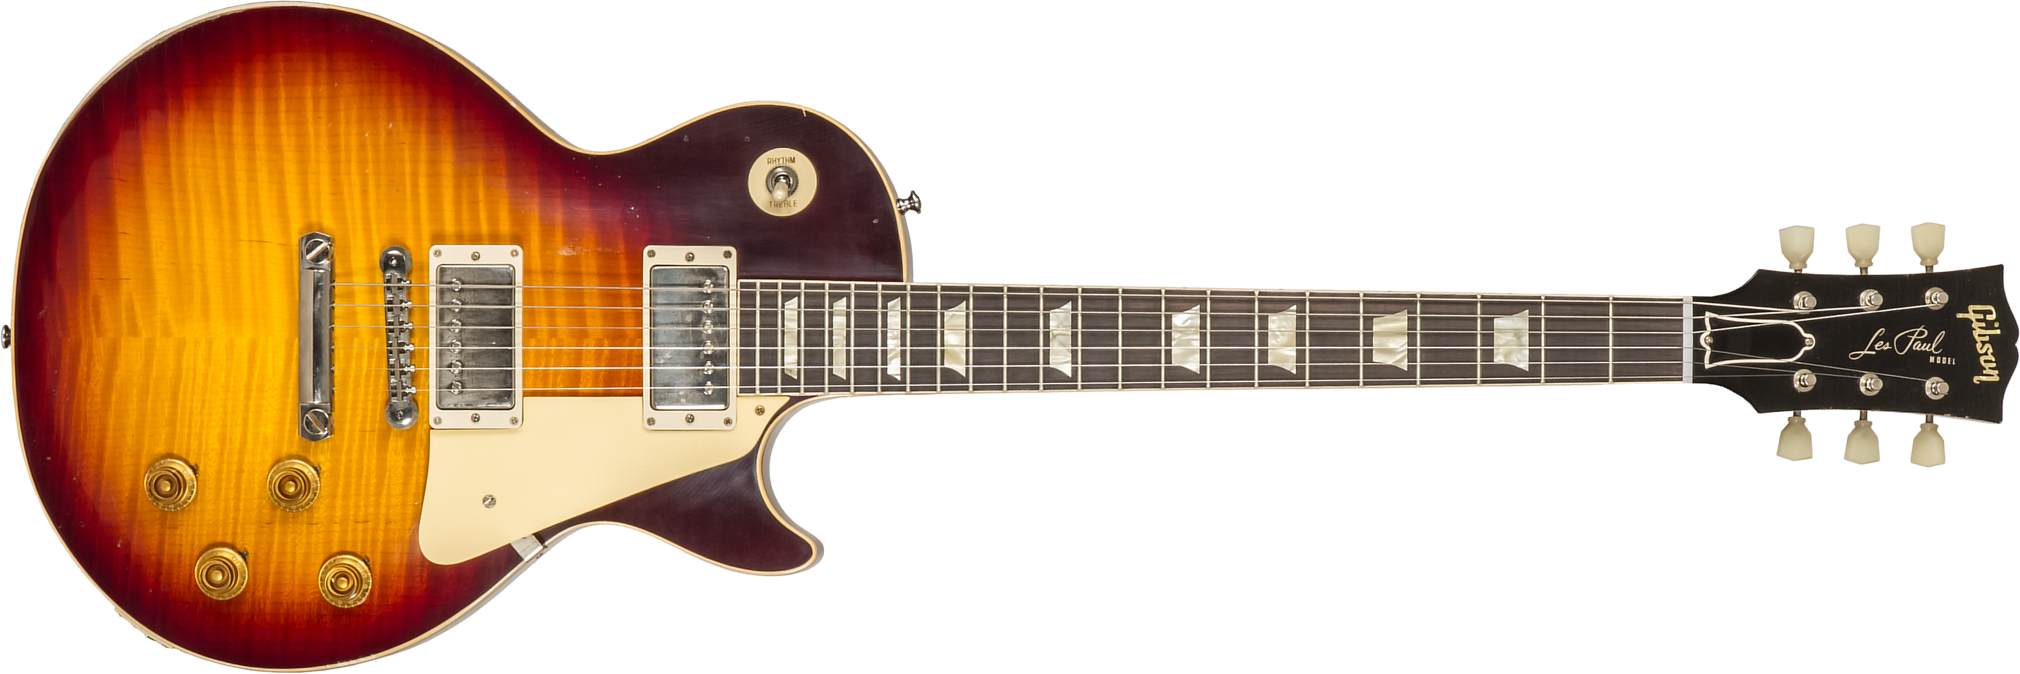 Gibson Custom Shop M2m Les Paul Standard 1959 Reissue 2h Ht Rw #932140 - Murphy Lab Light Aged Bourbon Burst - Guitare Électrique Single Cut - Main pi